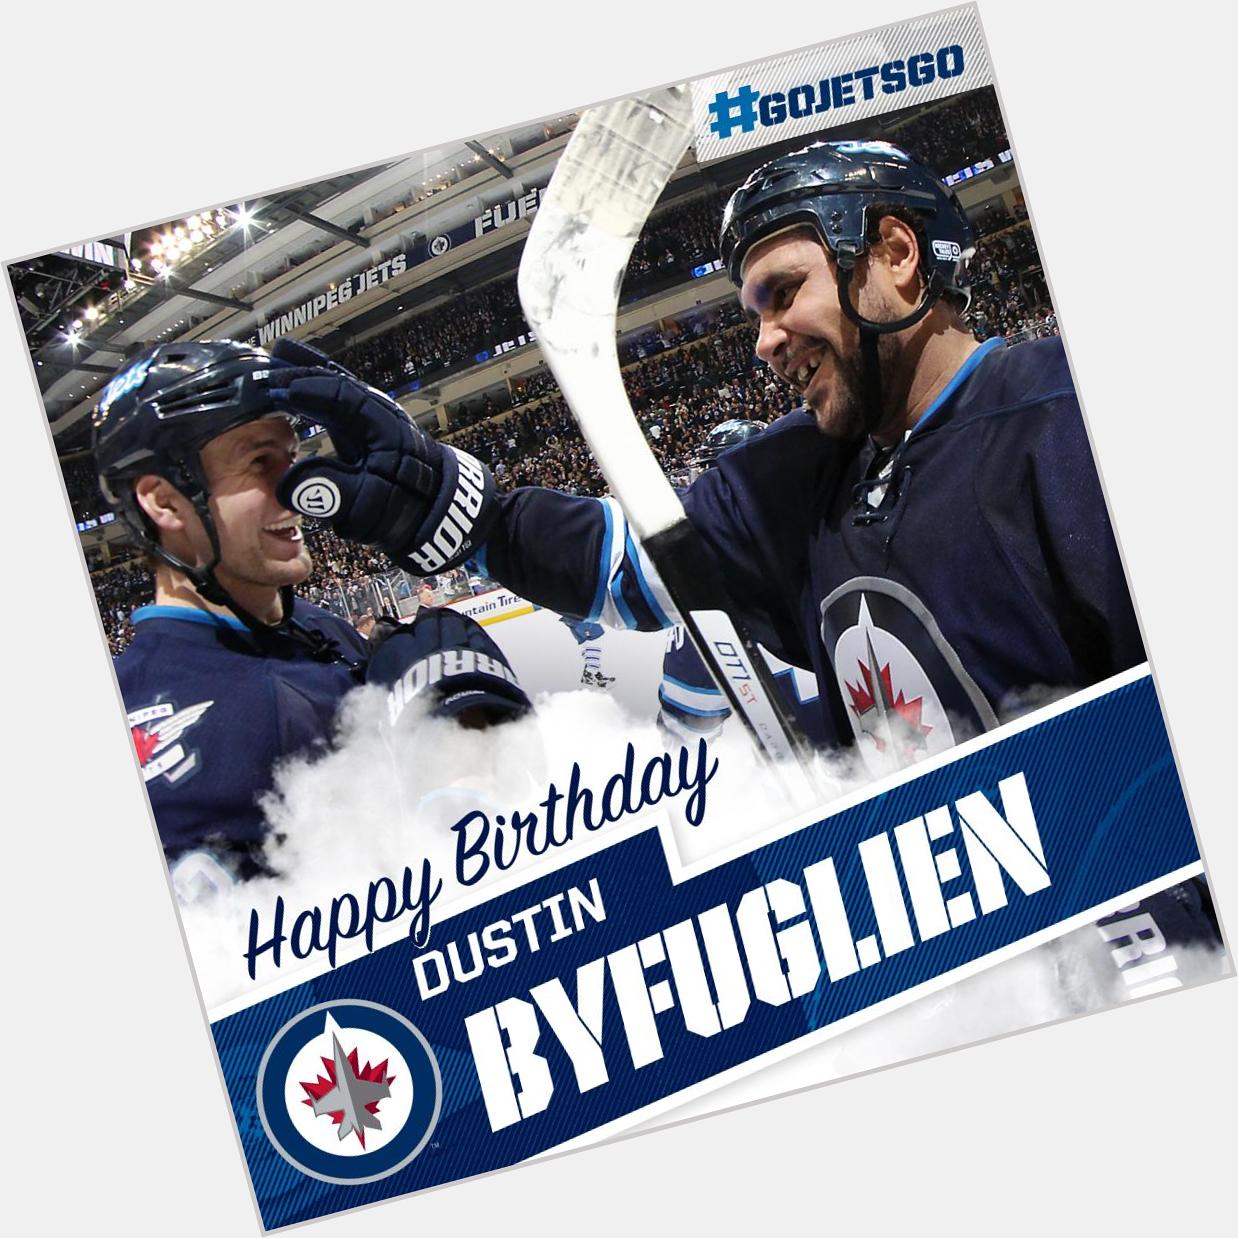 Happy Birthday to Dustin Byfuglien today! 